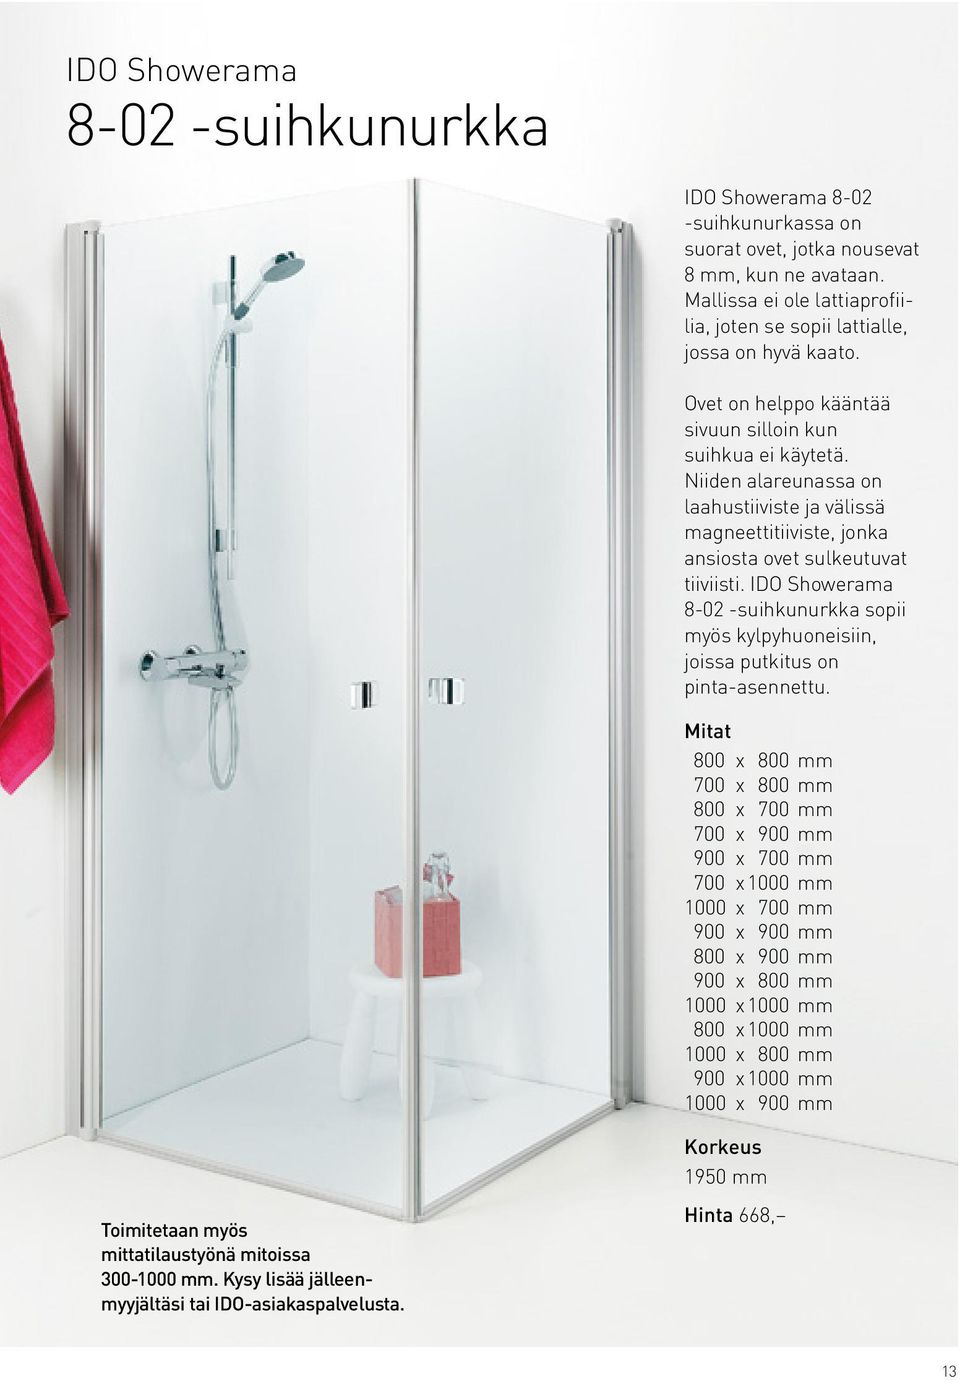 IDO Showerama 8-02 -suihkunurkka sopii myös kylpyhuoneisiin, joissa putkitus on pinta-asennettu.